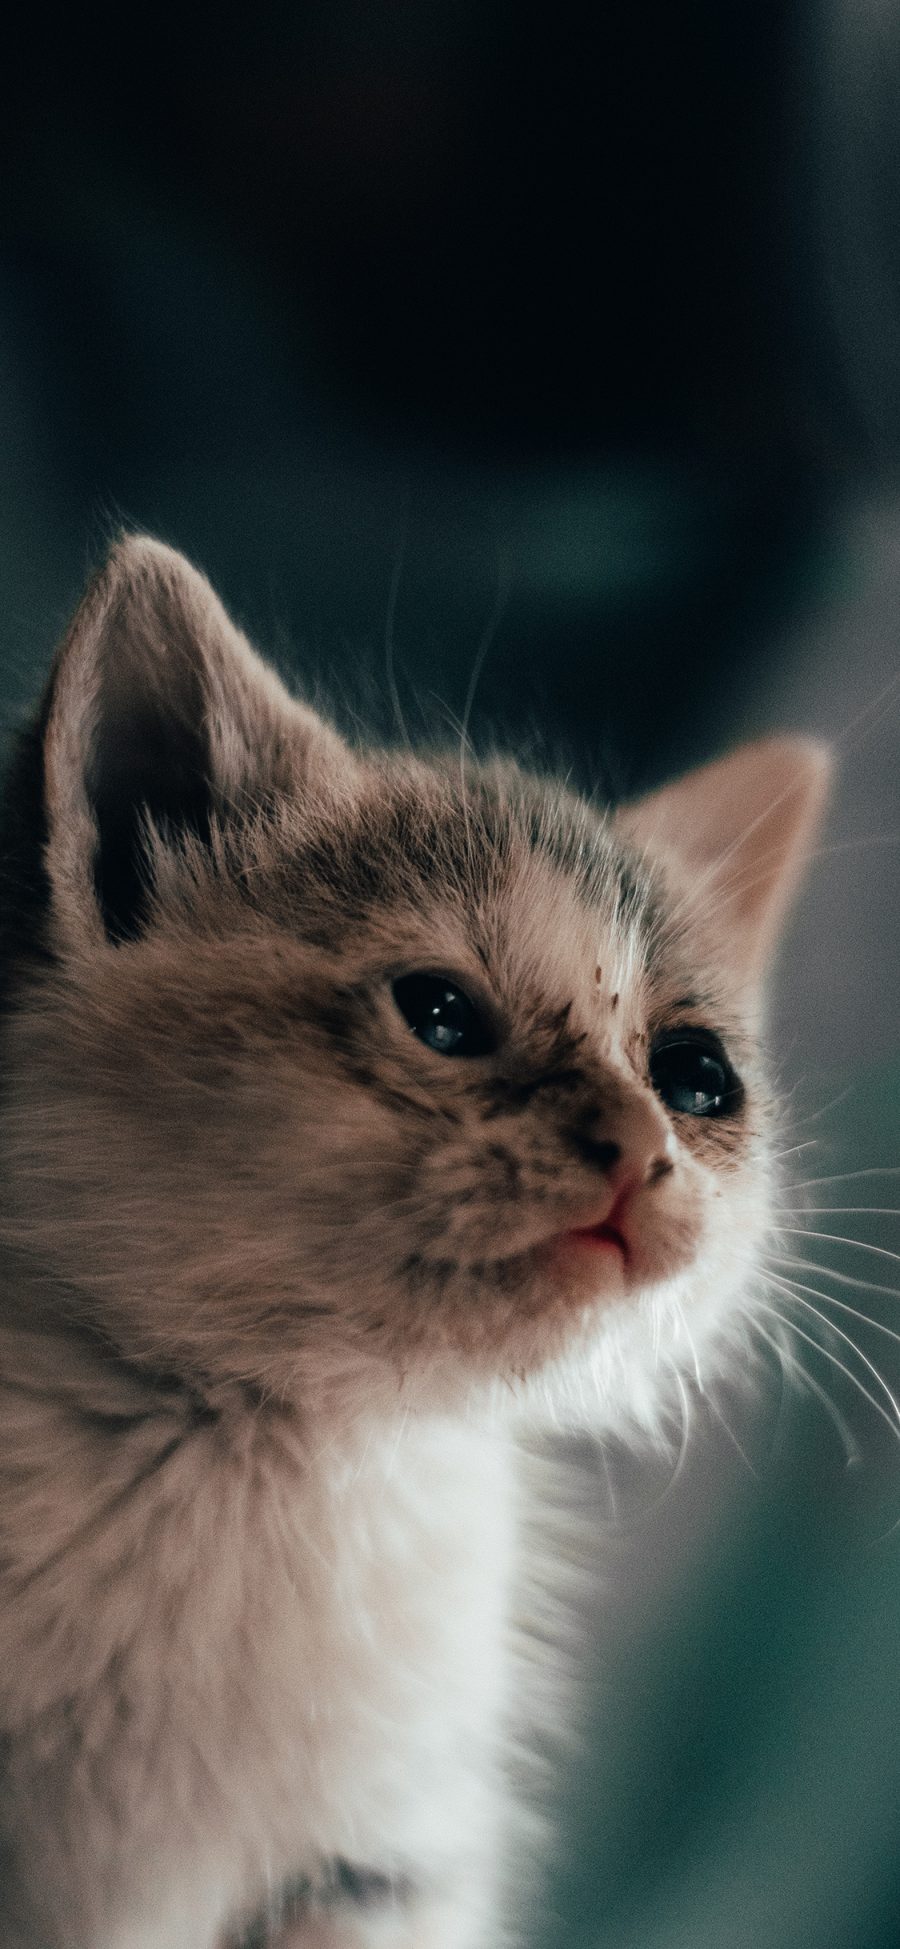 [2436×1125]猫咪 小猫 皮毛 可爱 苹果手机壁纸图片